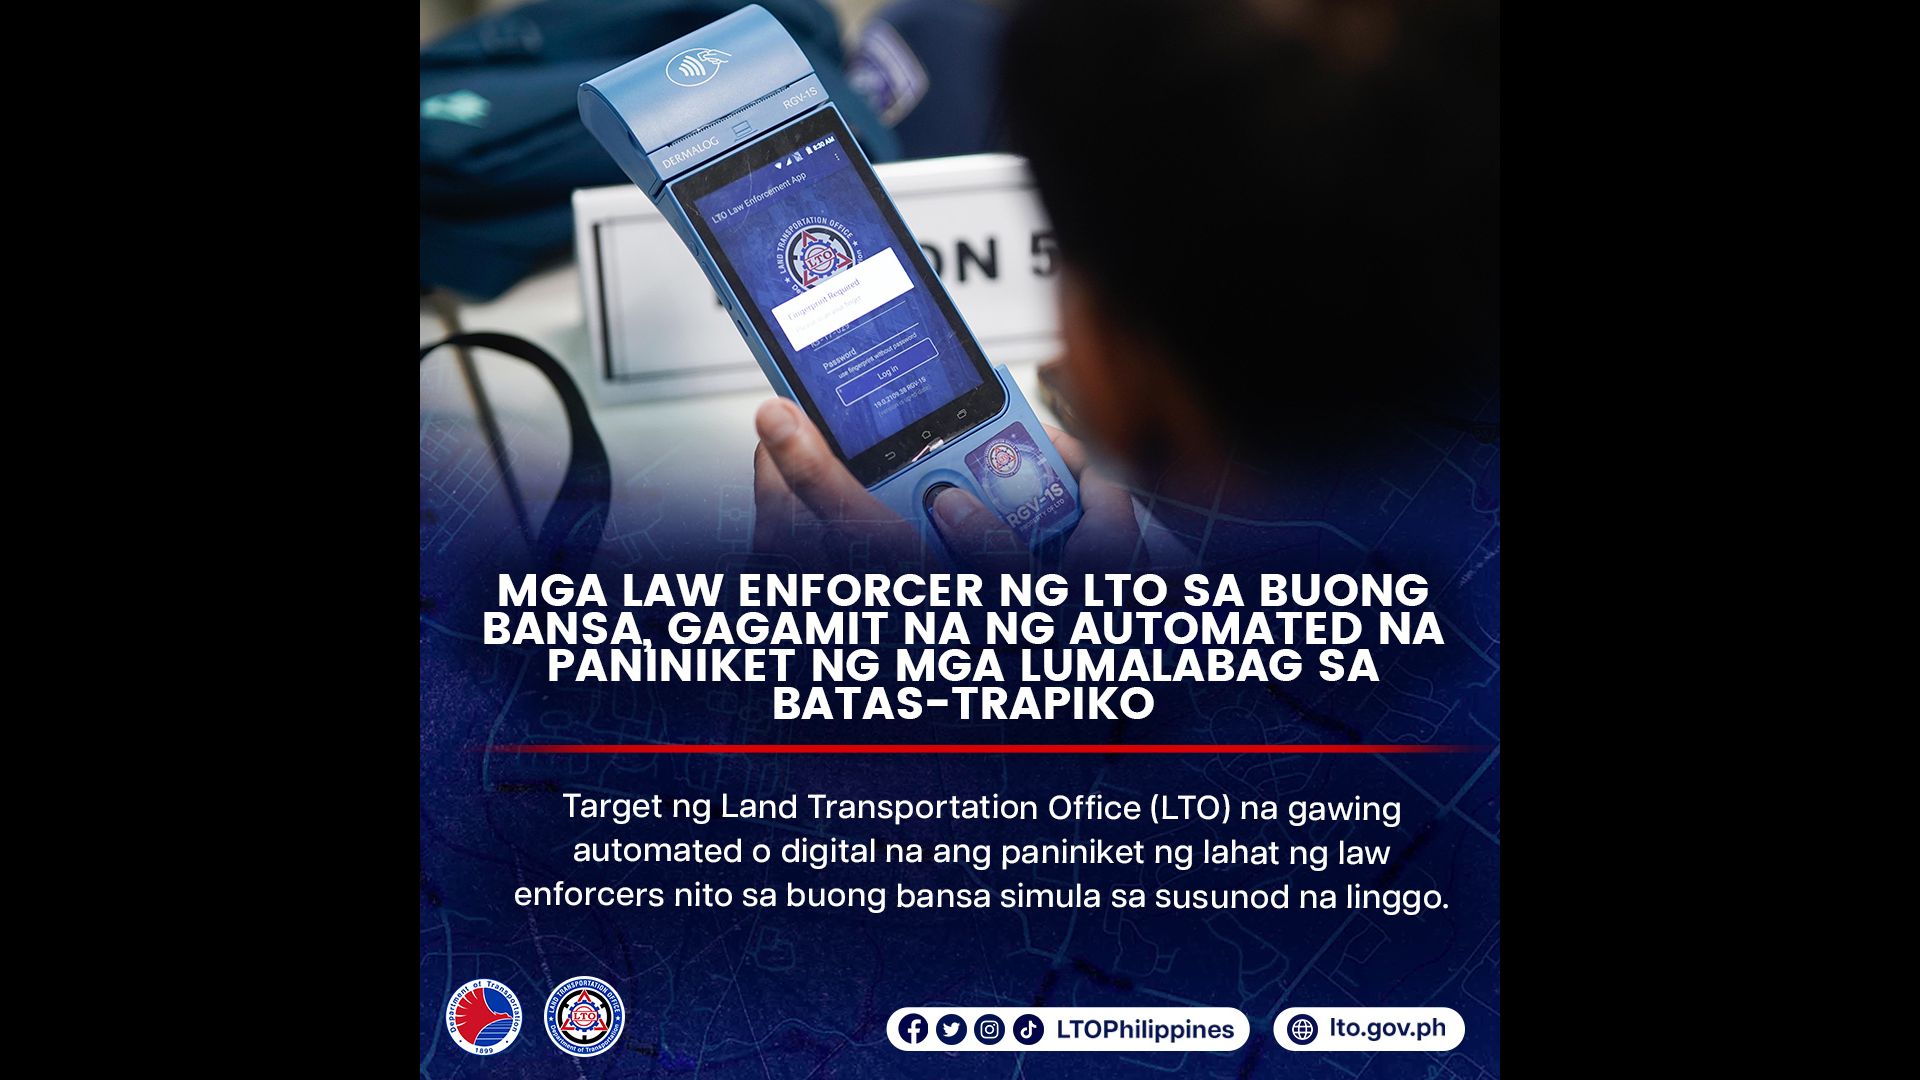 Pag-iisyu ng ticket ng LTO enforcers gagawin nang automated 